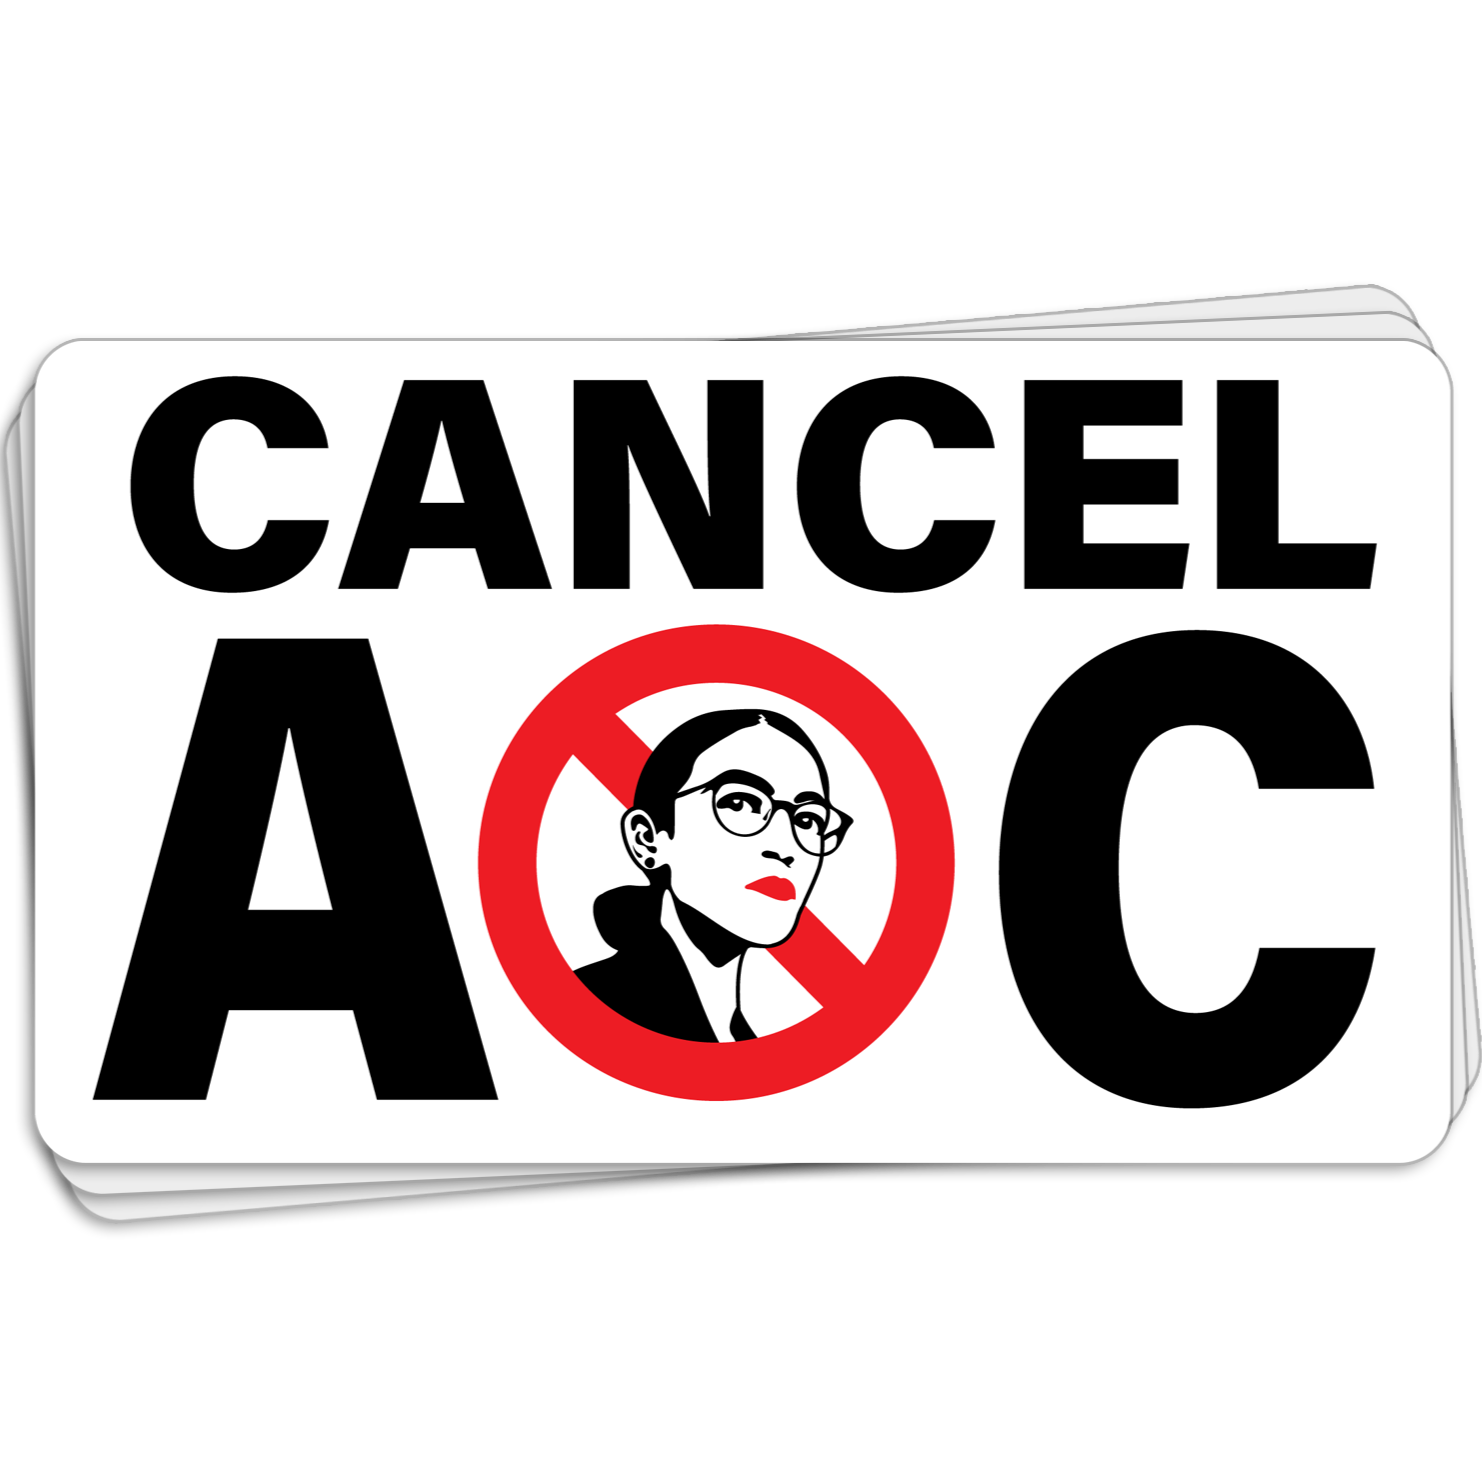 Cancel AOC - Decal